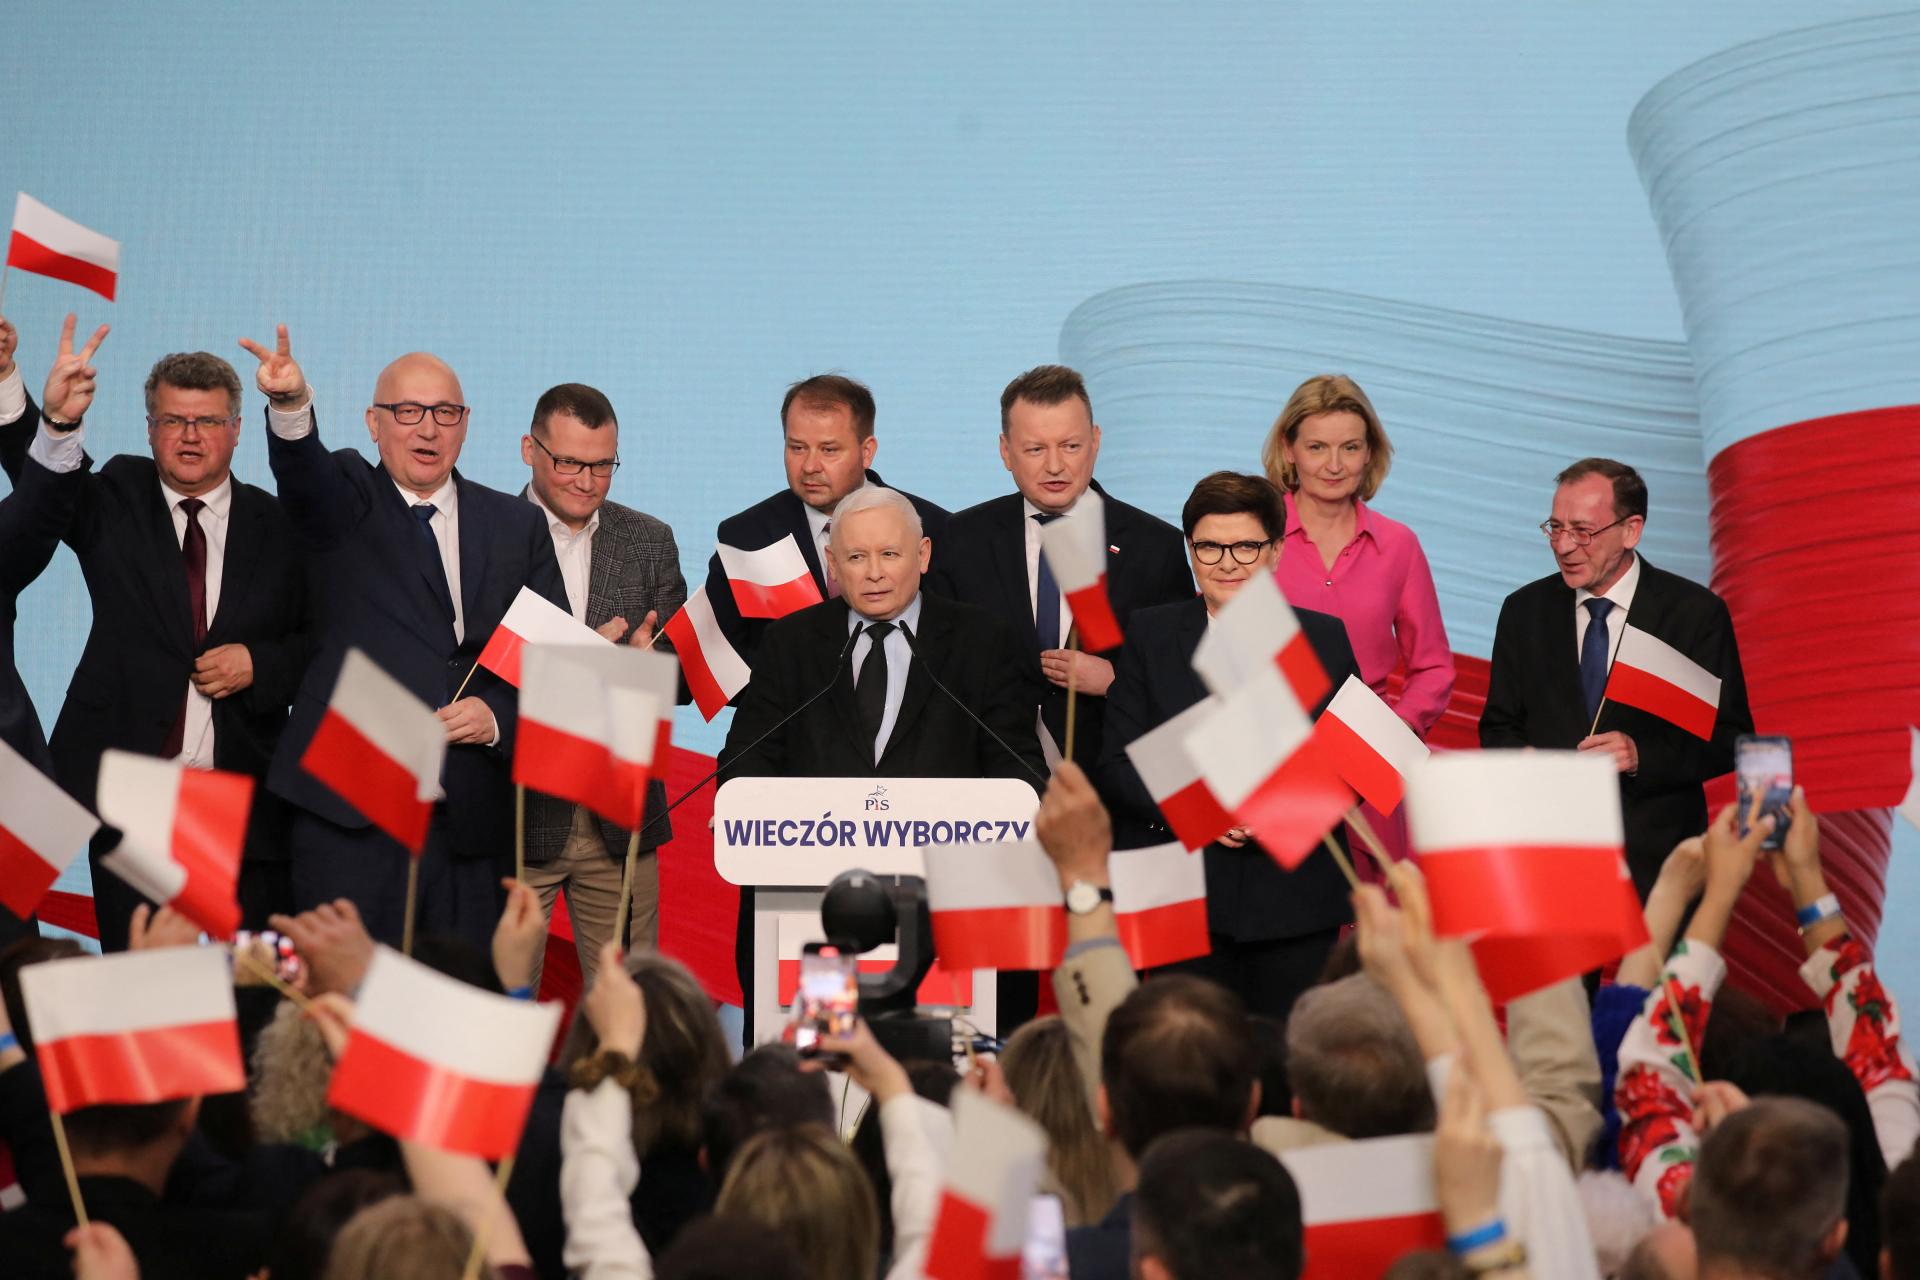 Poľské regionálne voľby podľa odhadu vyhrá opozičná strana PiS, pred vládnou Občianskou koalíciou má navrch